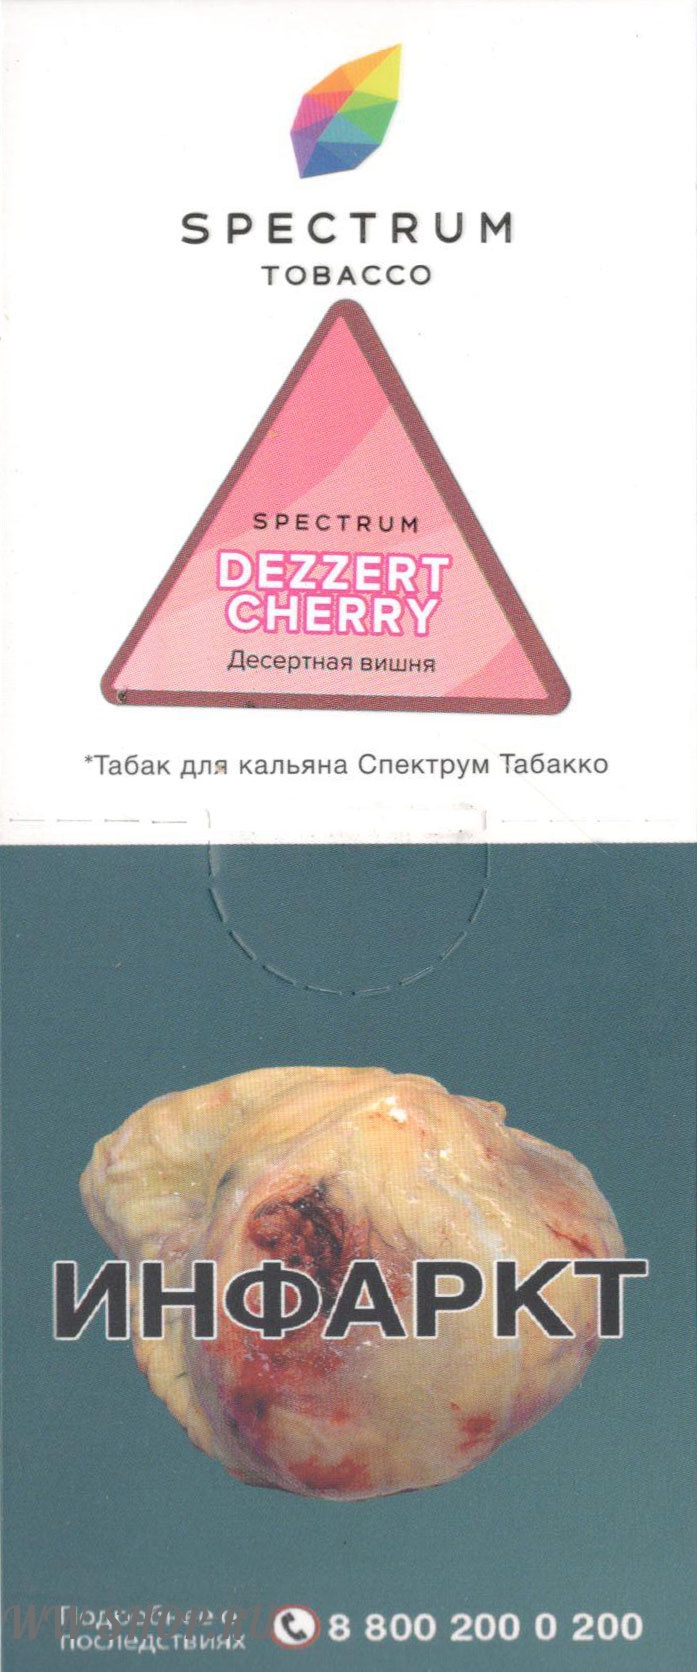 spectrum- десертная вишня (dezzert cherry) Волгоград